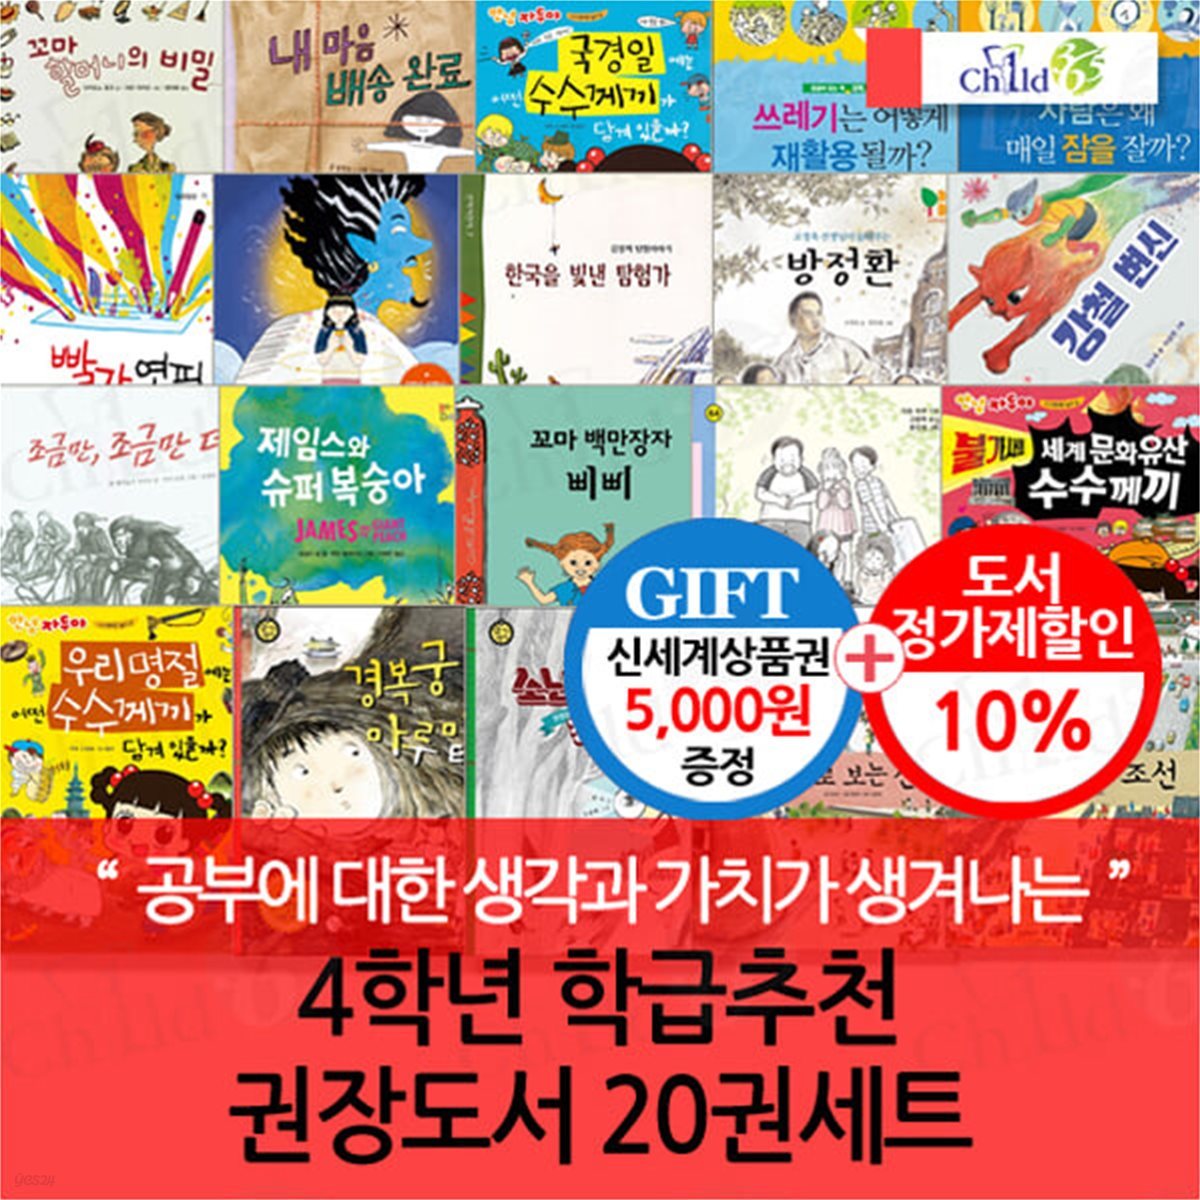 4학년 학급추천 권장도서 20권세트/상품권5천